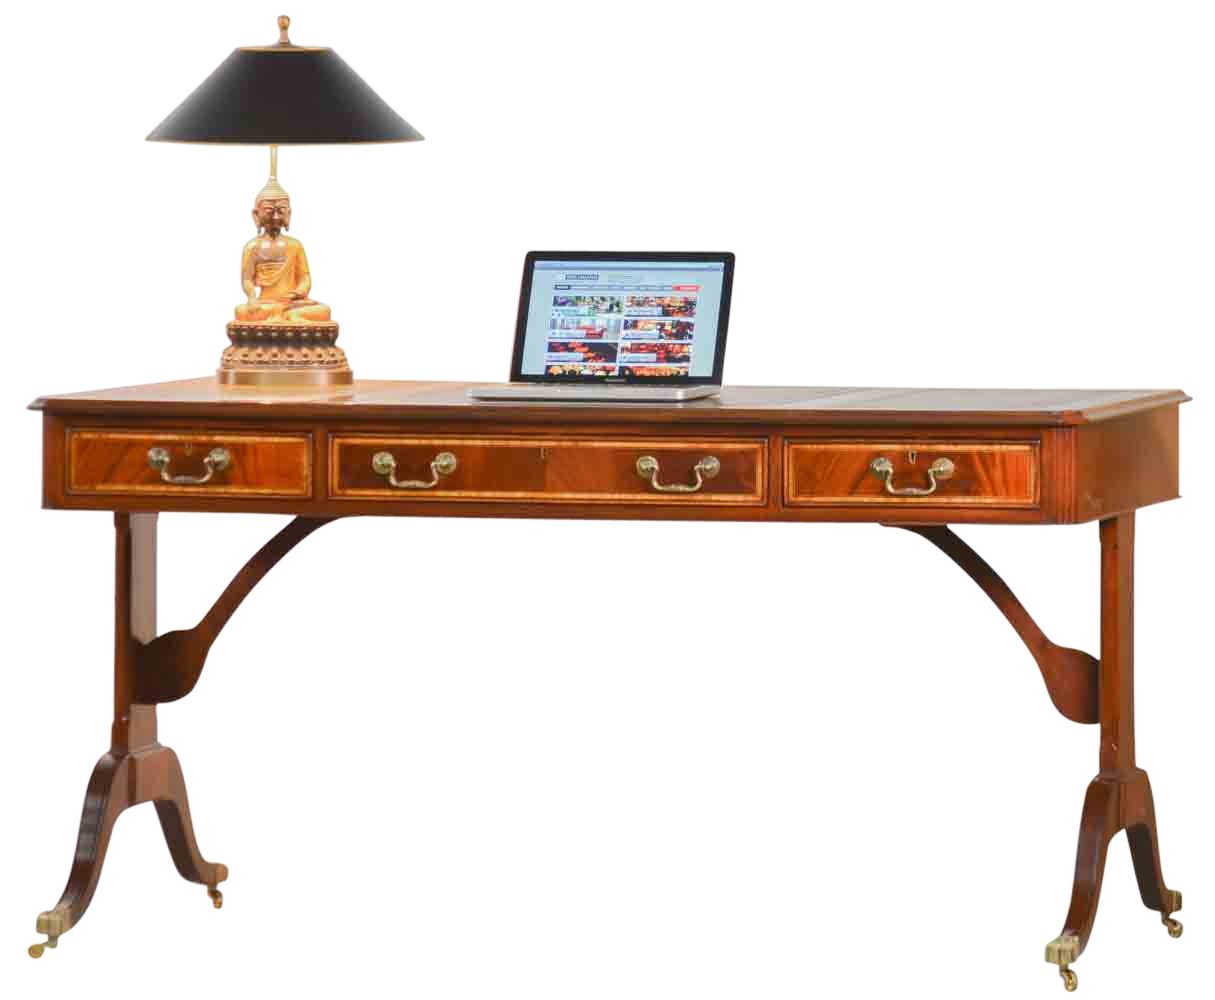 Kai Wiechmann Schreibtisch Bureau Plat Mahagoni 156 cm, hochwertiger Bürotisch, Writing Table mit Lederschreibeinlage, beidseitig verwendbar von Kai Wiechmann